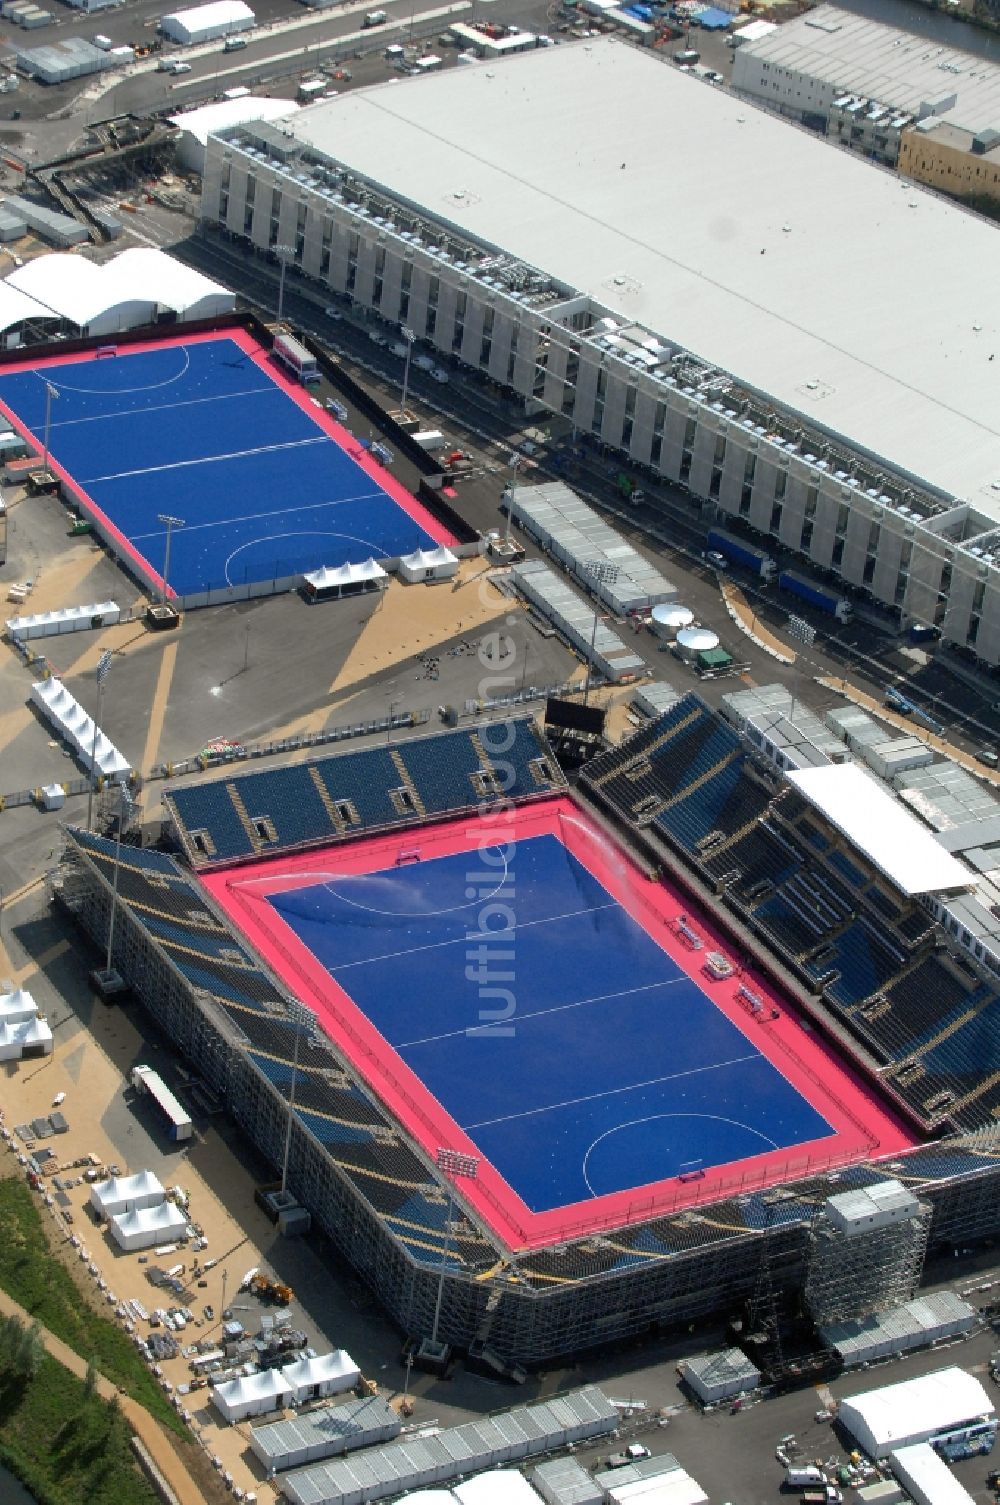 London von oben - Riverbank Arena im Olympiapark ein Austragungsort der Olympischen Spiele 2012